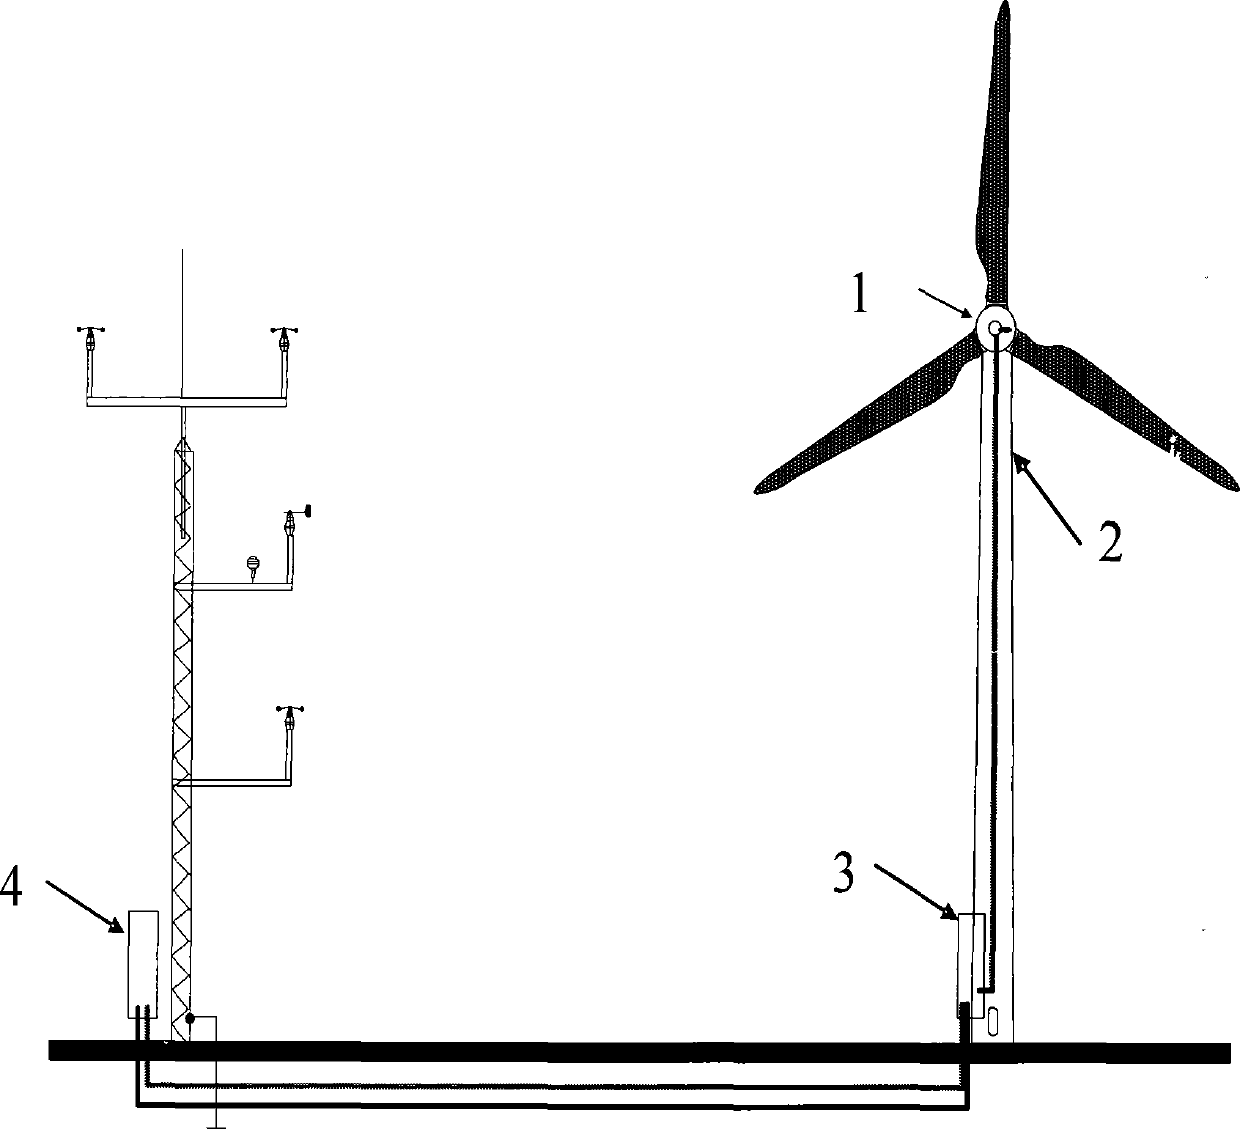 Wind generating set load testing system meeting IEC61400-13 standard